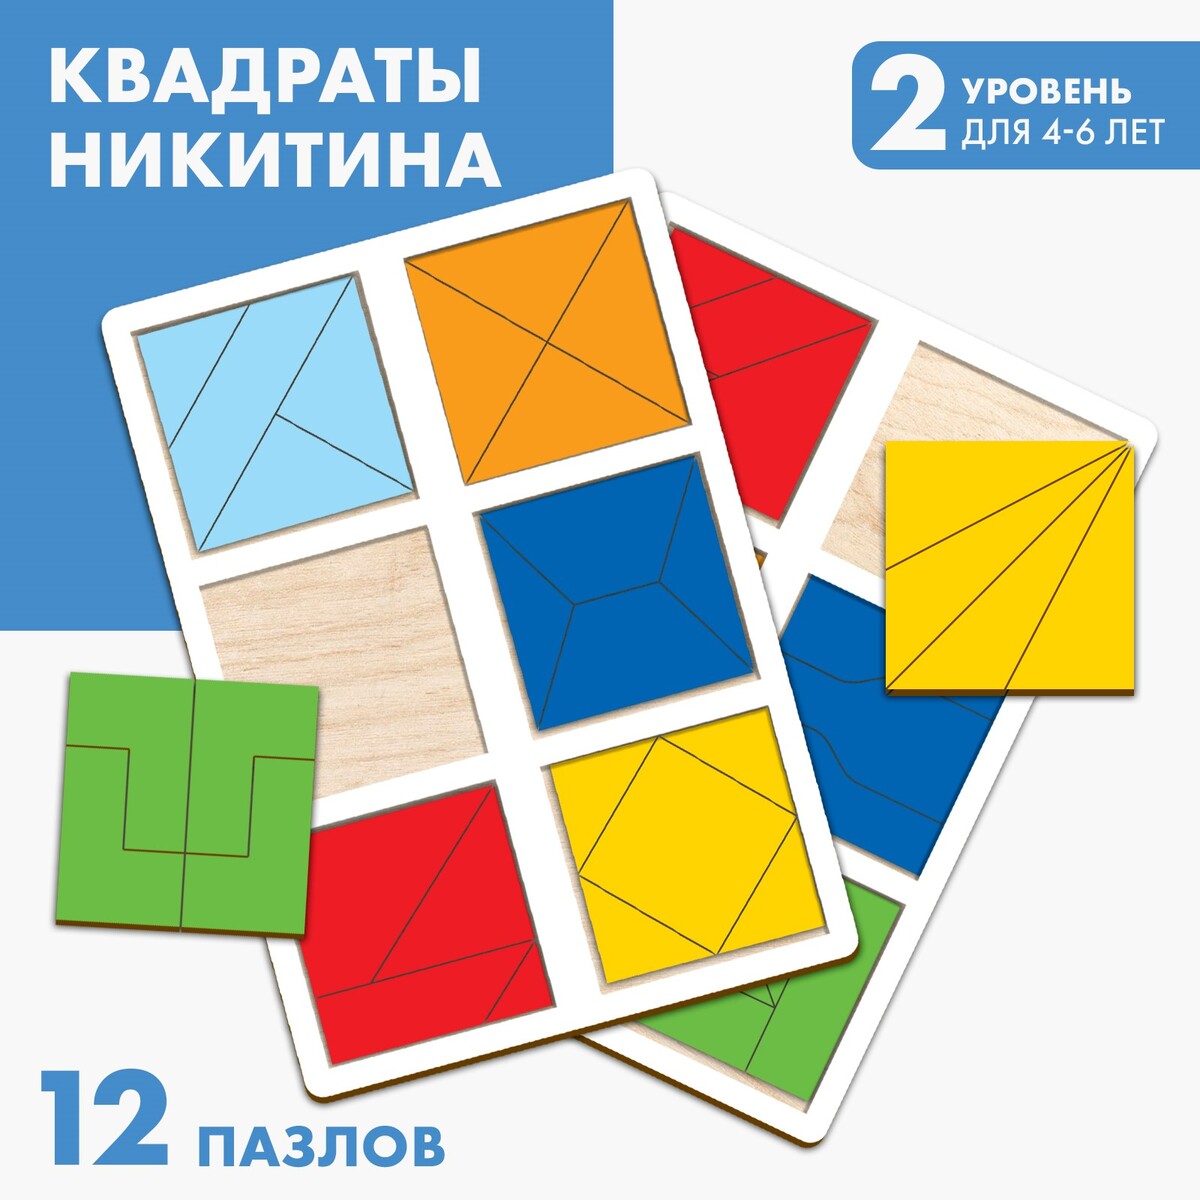 Квадраты 2 уровень (2 шт.), 12 квадратов